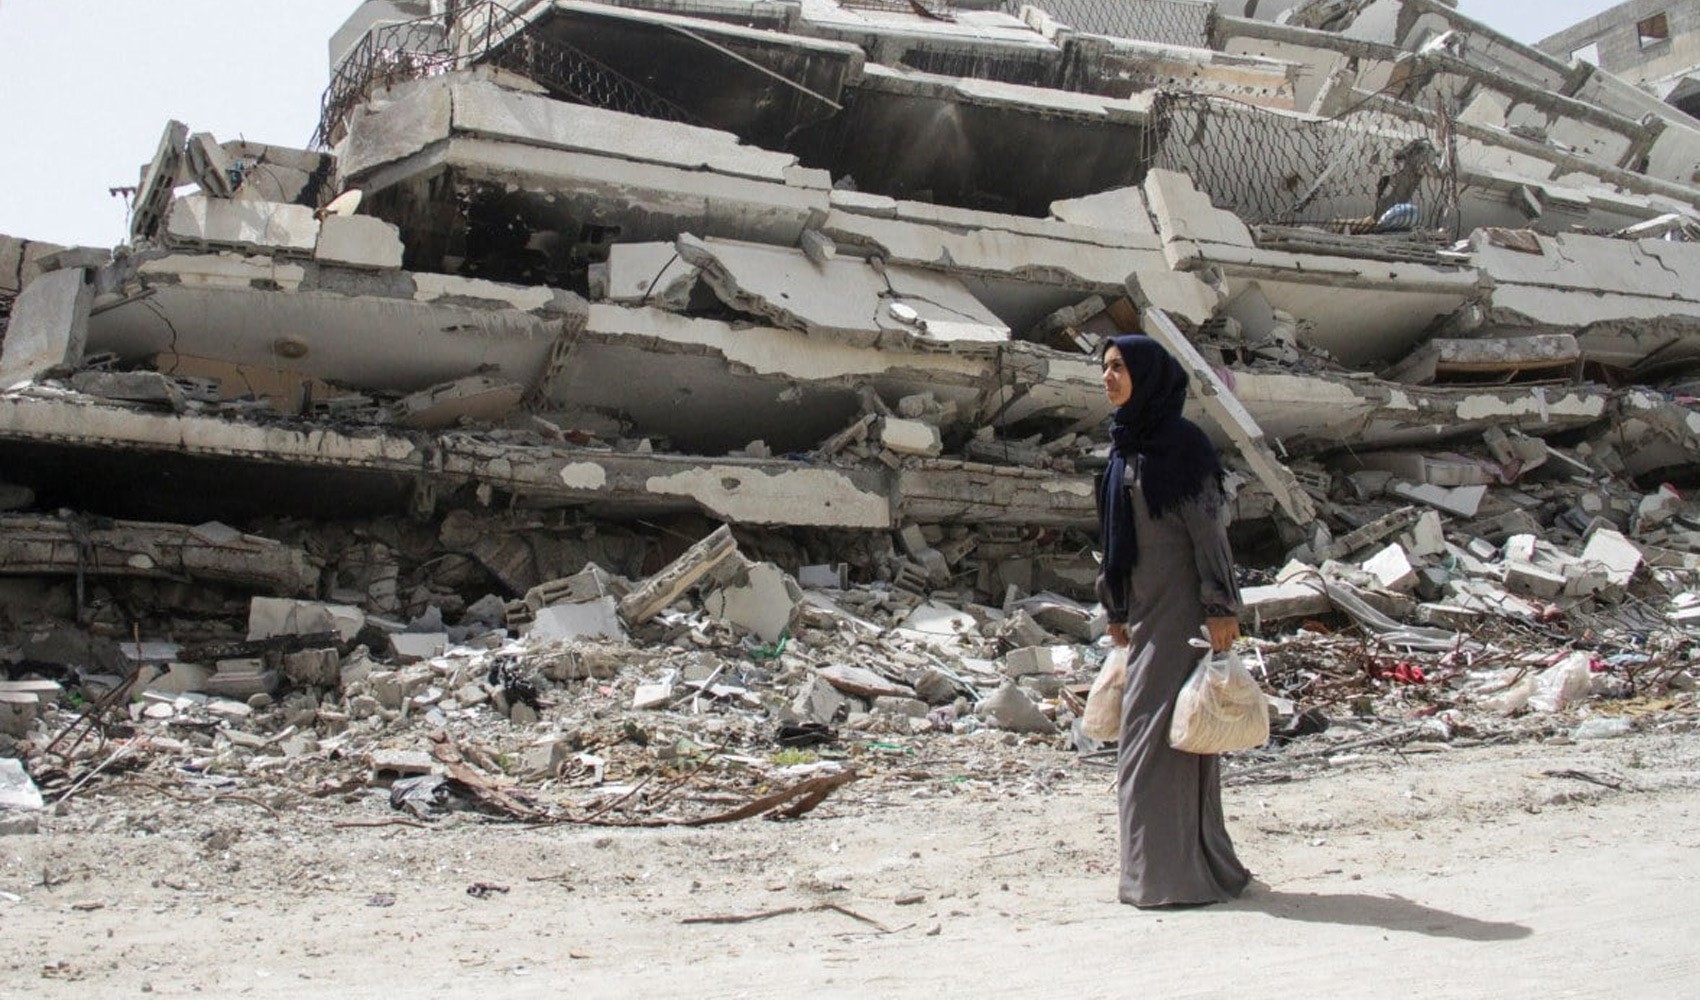 Gazze’de can kaybı 34 bin 971’e yükseldi